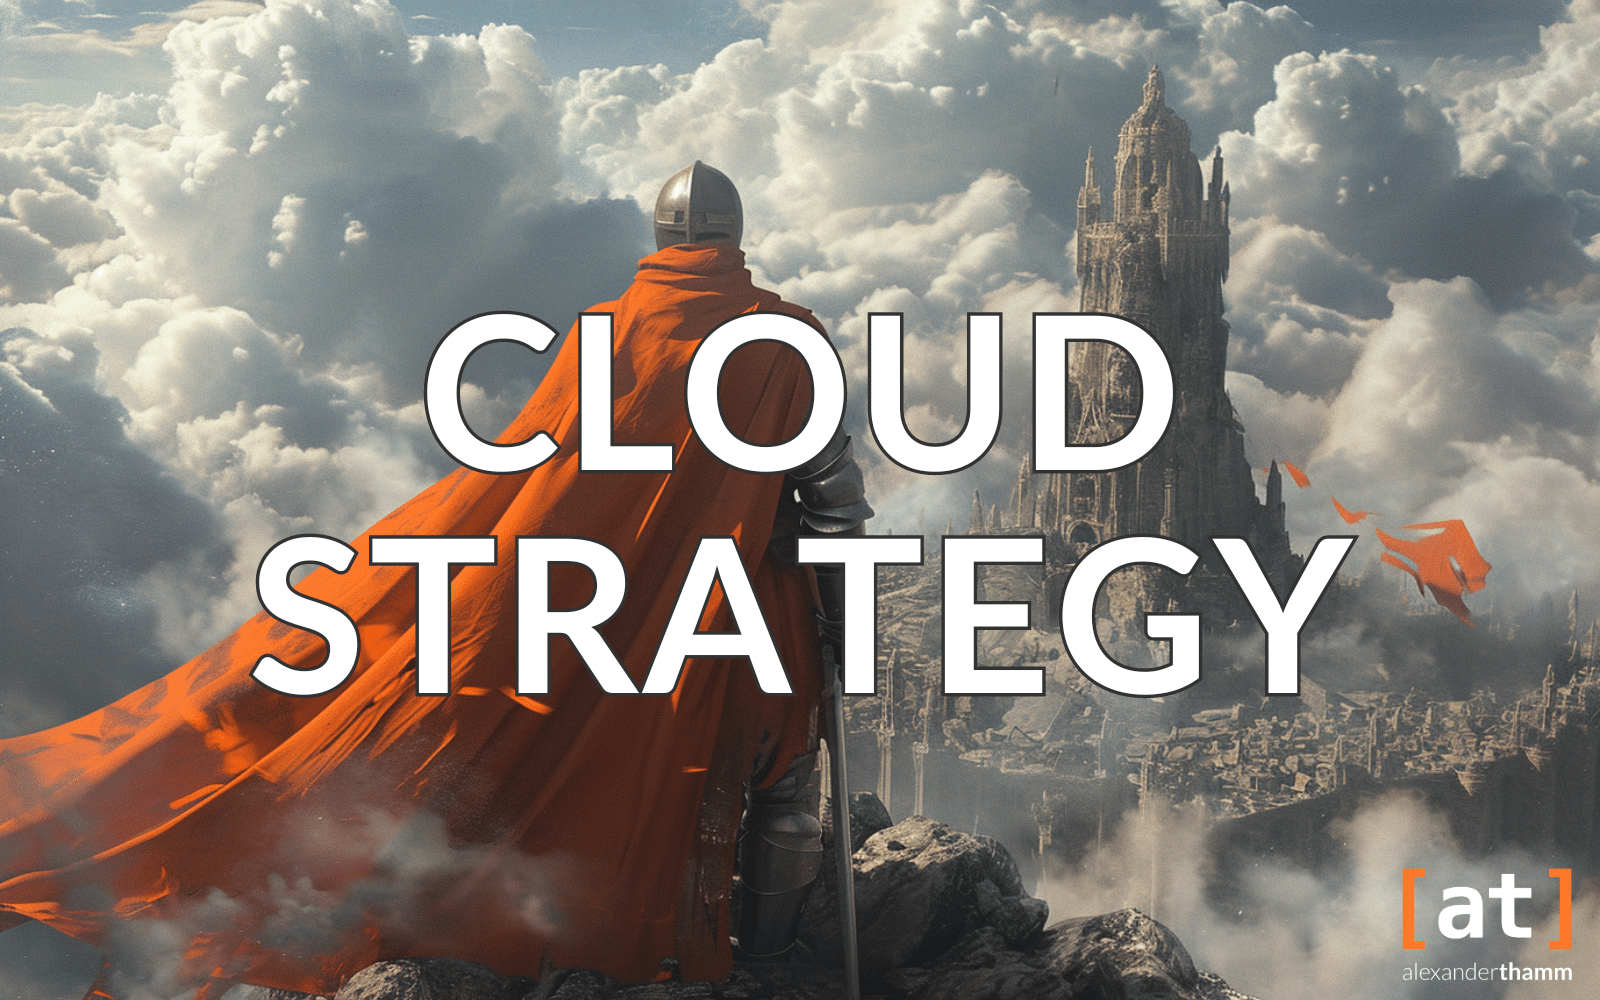 Cloud-Strategie, ein Ritter mit einem orangem Umhang auf einem Felsvorsprung, im Hintergrund eine Festung mit großem Burgturm in einer Architektur von Wolken